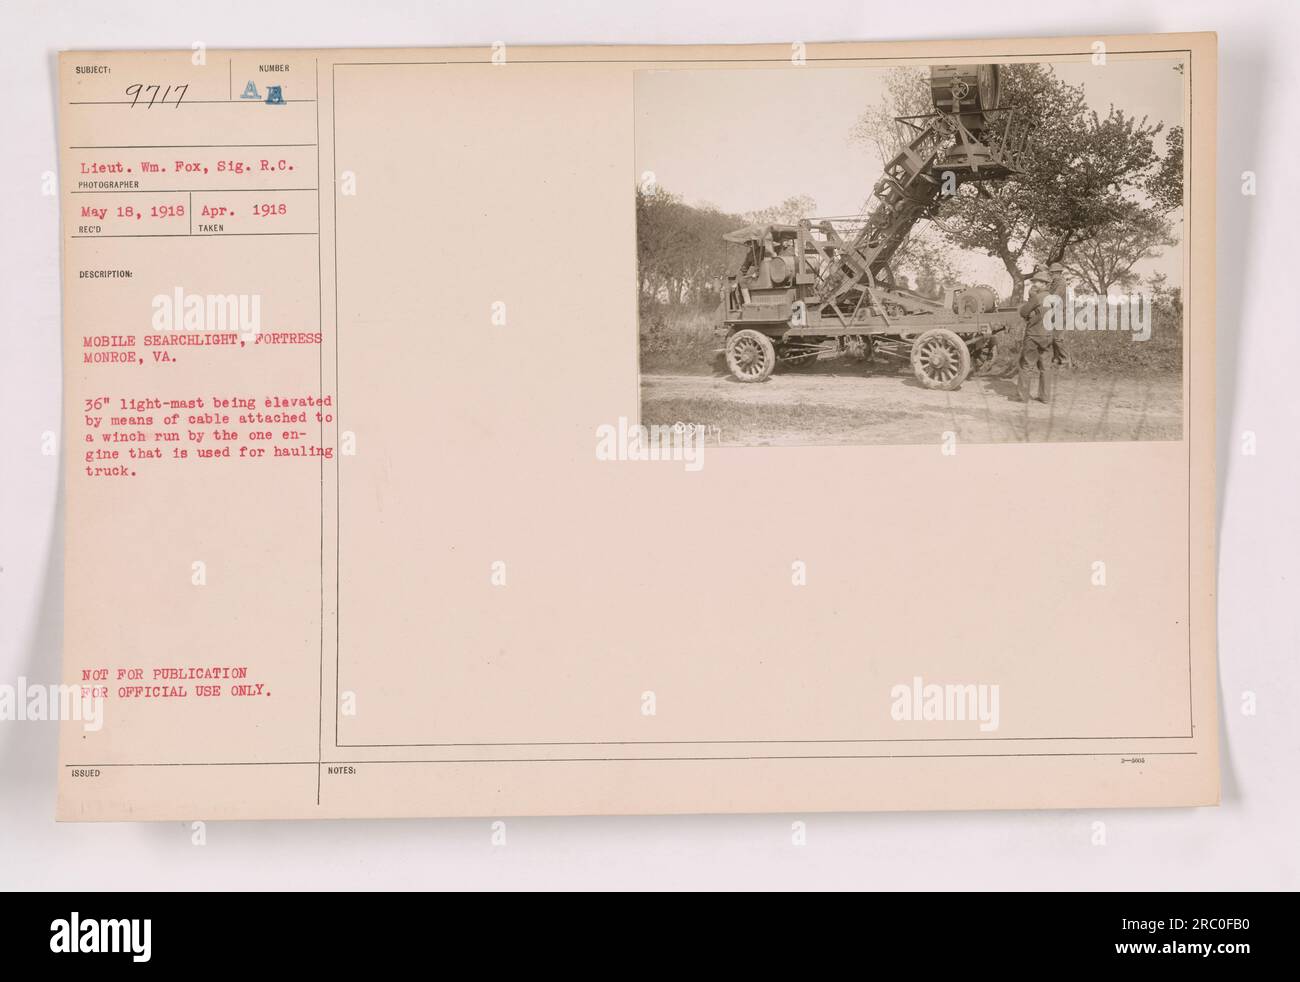 Dieses Foto zeigt einen mobilen Suchscheinwerfer in der Festung Monroe, VA, während des Ersten Weltkriegs. Der 36'-Leichtmast wird mit einem Seil angehoben, das an einer Winde befestigt ist, die von einem einzelnen Motor zum Transportieren des Lkws geführt wird. Dieses Bild wurde am 18. Mai 1918 von Lieutenant WN aufgenommen. Fox, Signalkorps. Stockfoto